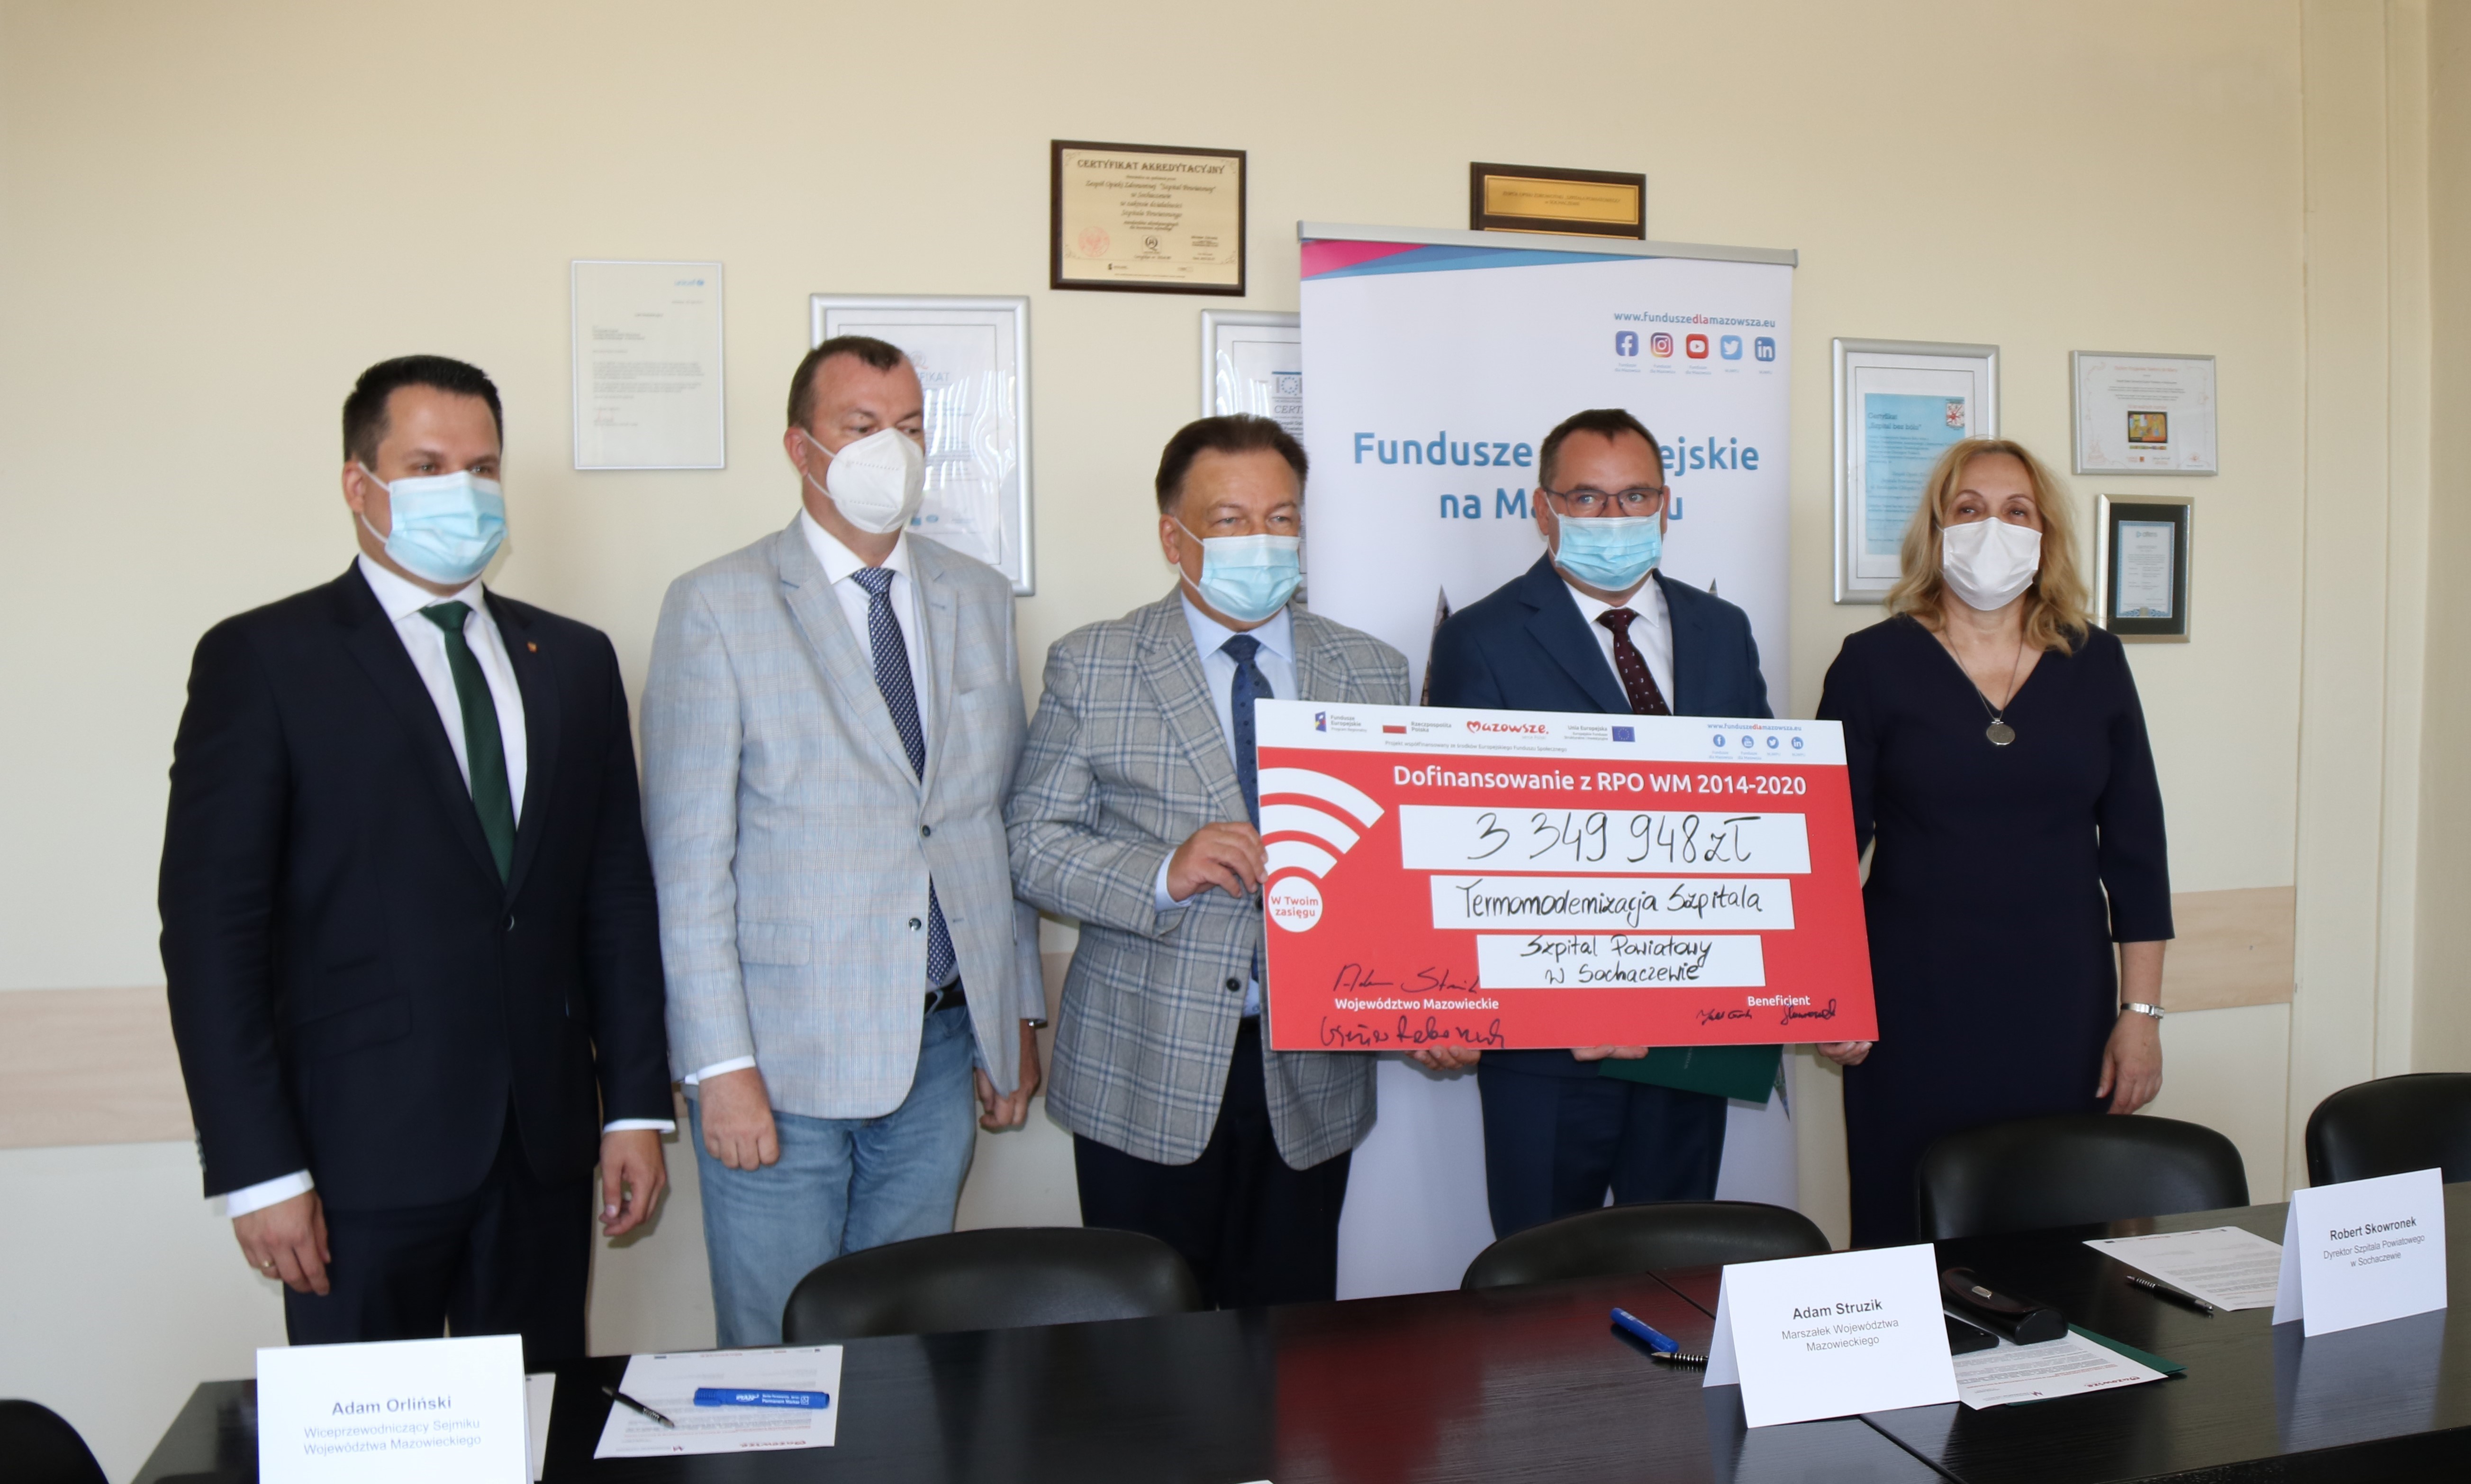 Podpisanie umowy na realizację projektu z zakresu termomodernizacji budynków szpitala powiatowego w Sochaczewie